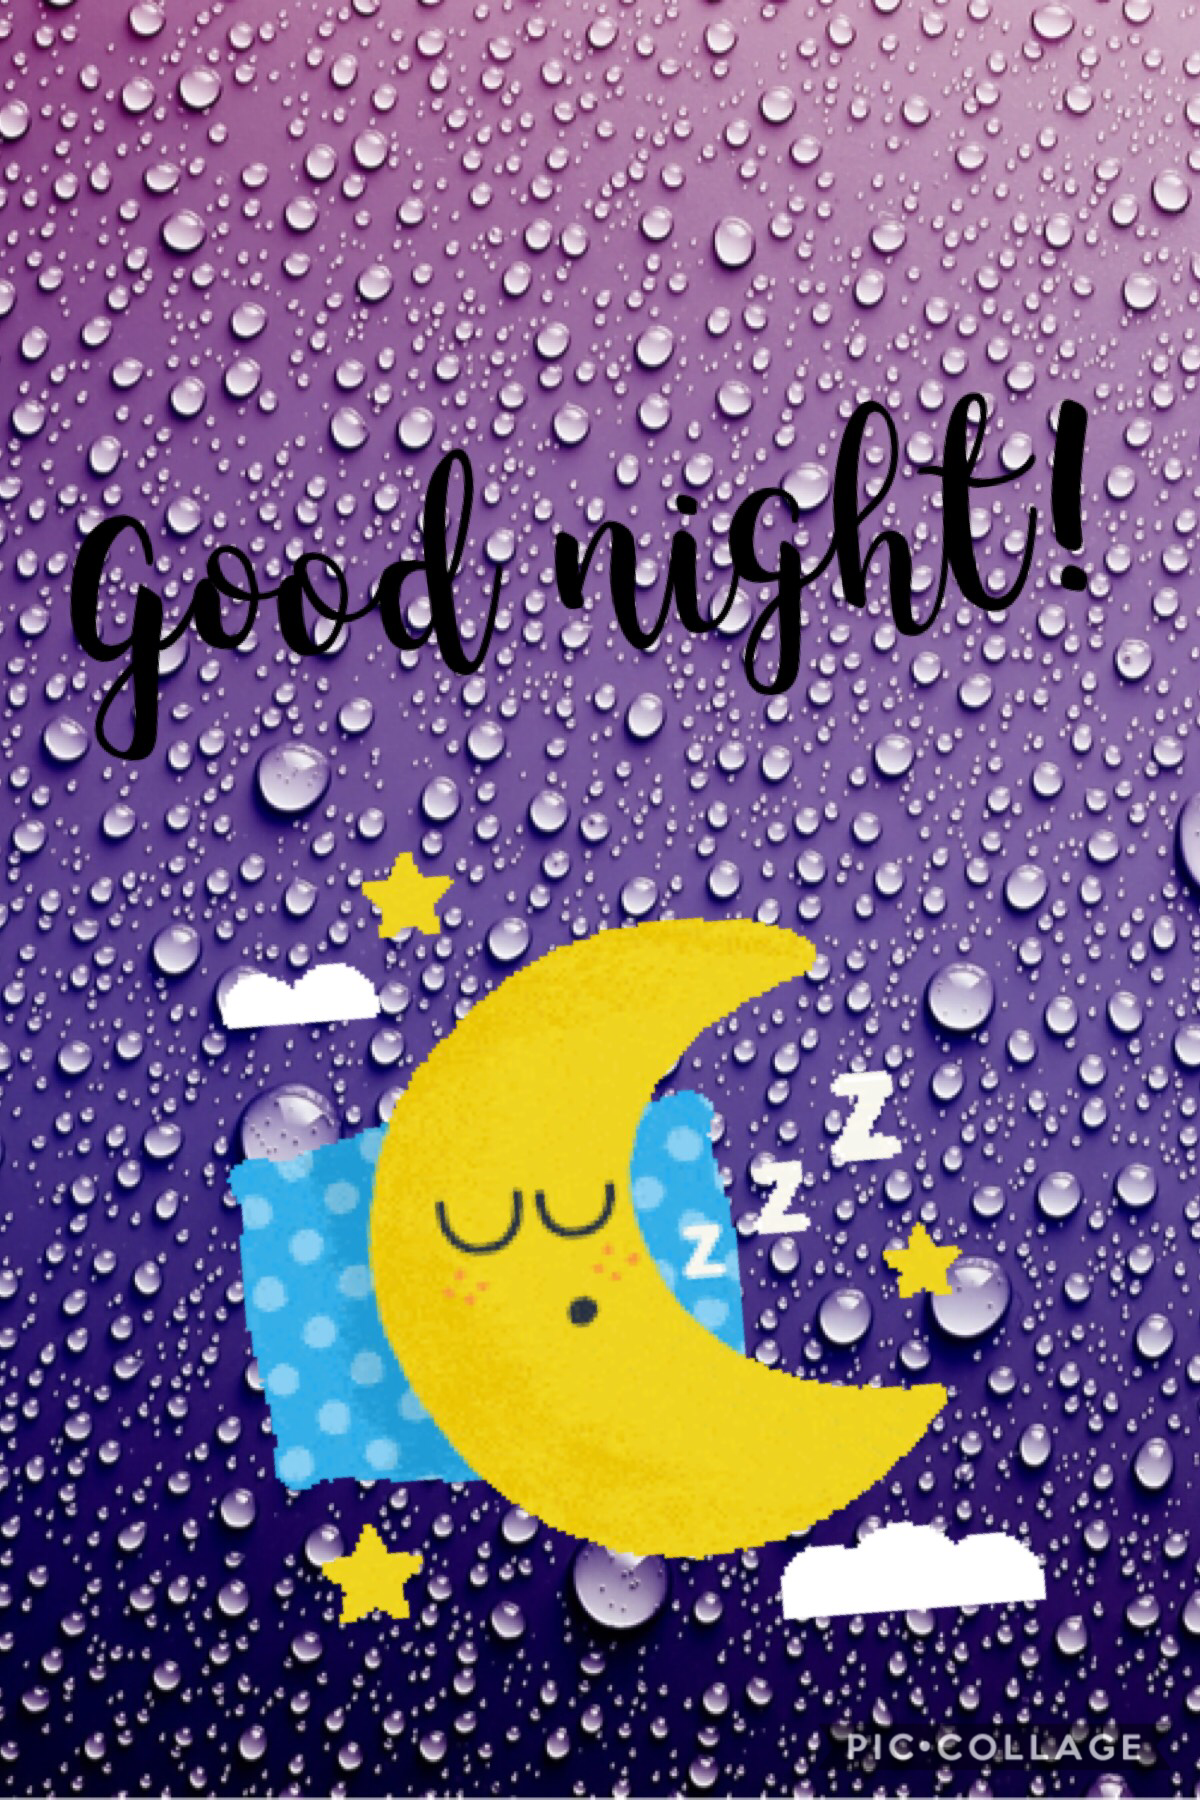 #goodnight #moon #sleepwell